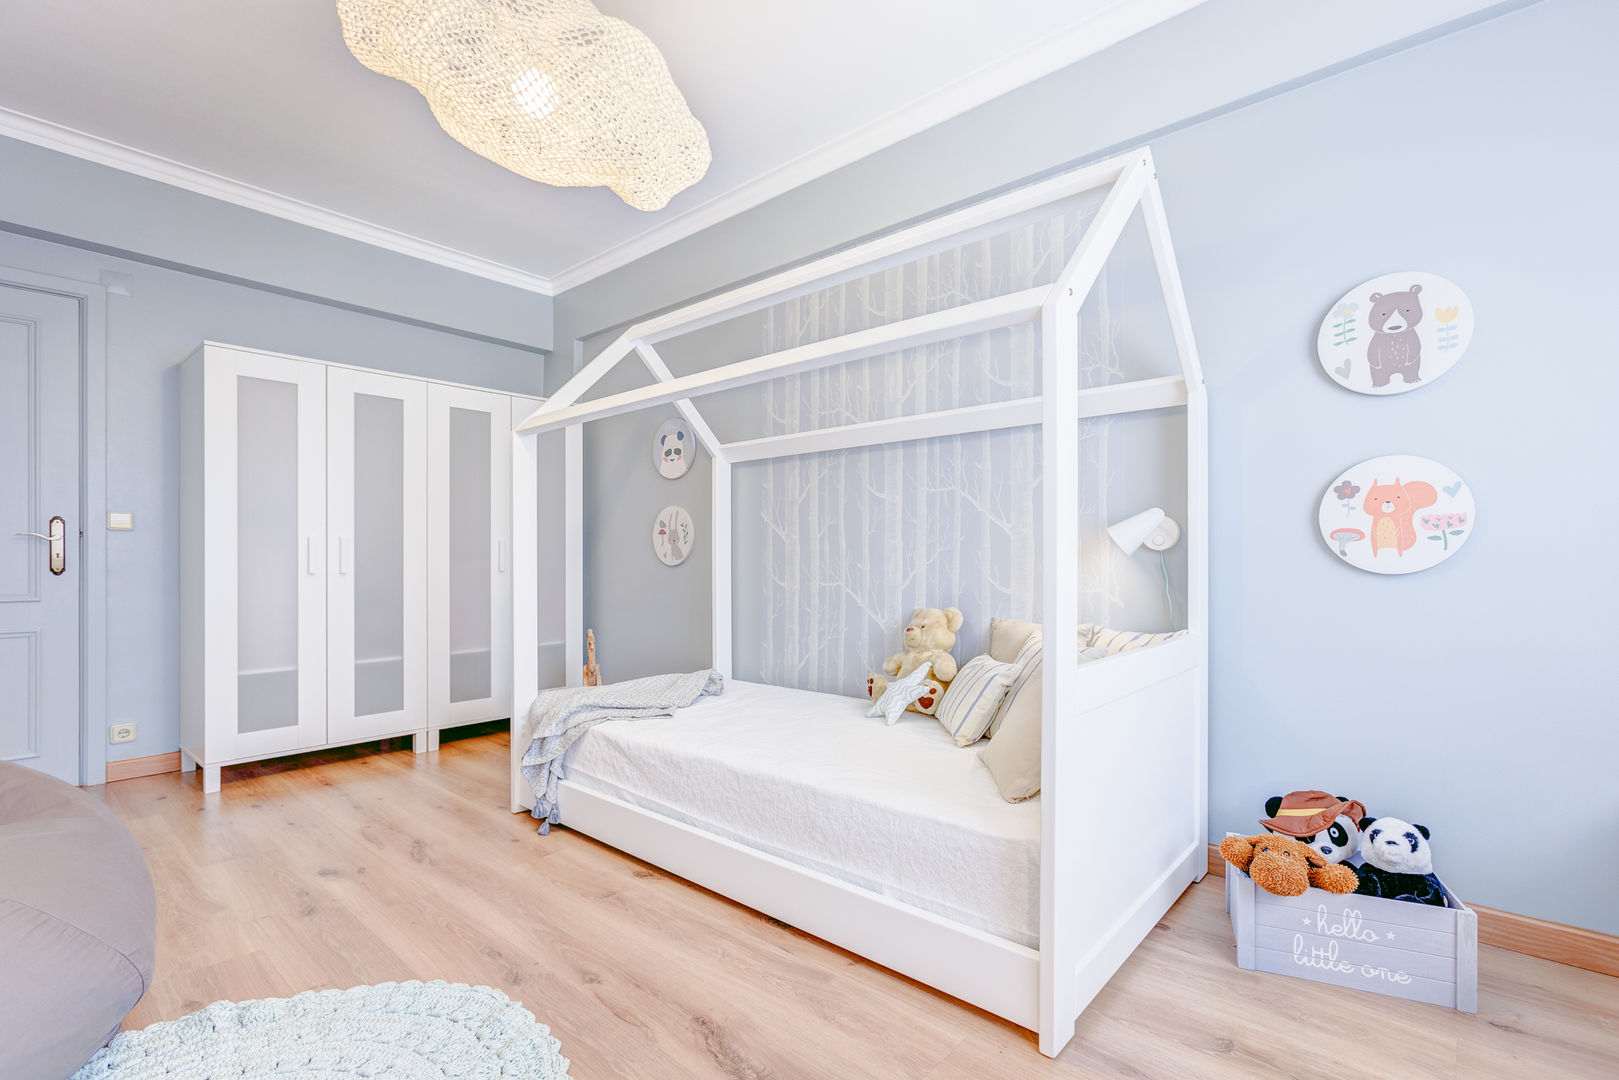 Querido Mudei a Casa – Ep 2615, Santiago | Interior Design Studio Santiago | Interior Design Studio Dormitorios infantiles de estilo escandinavo